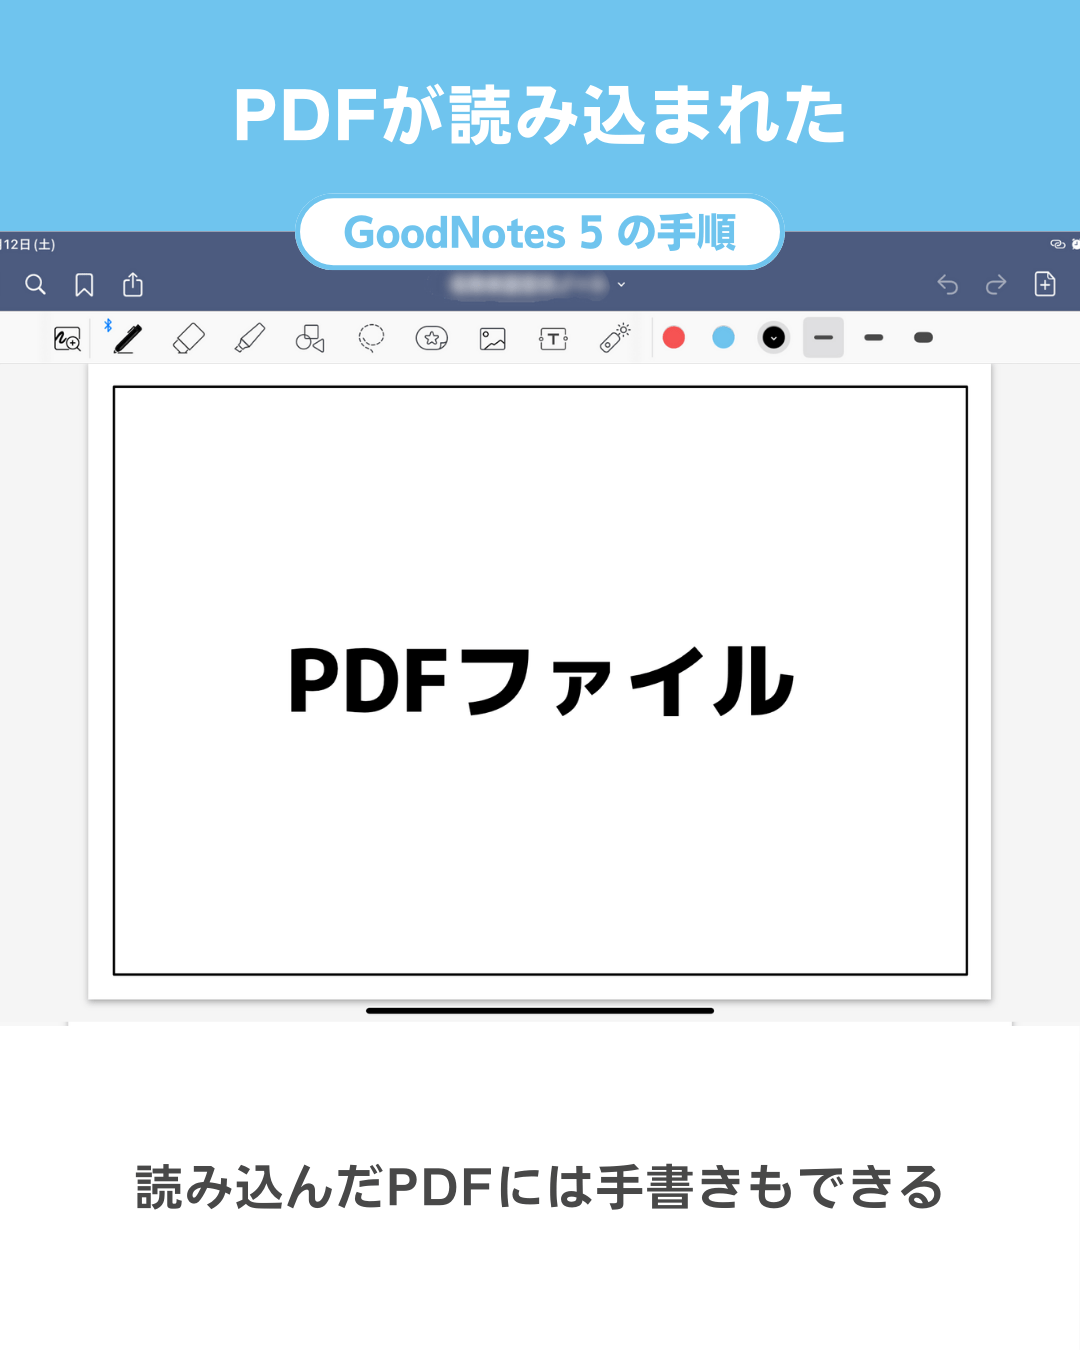 GoodNotes 5にPDFを読み込む・取り込む手順 - PDFを読込完了